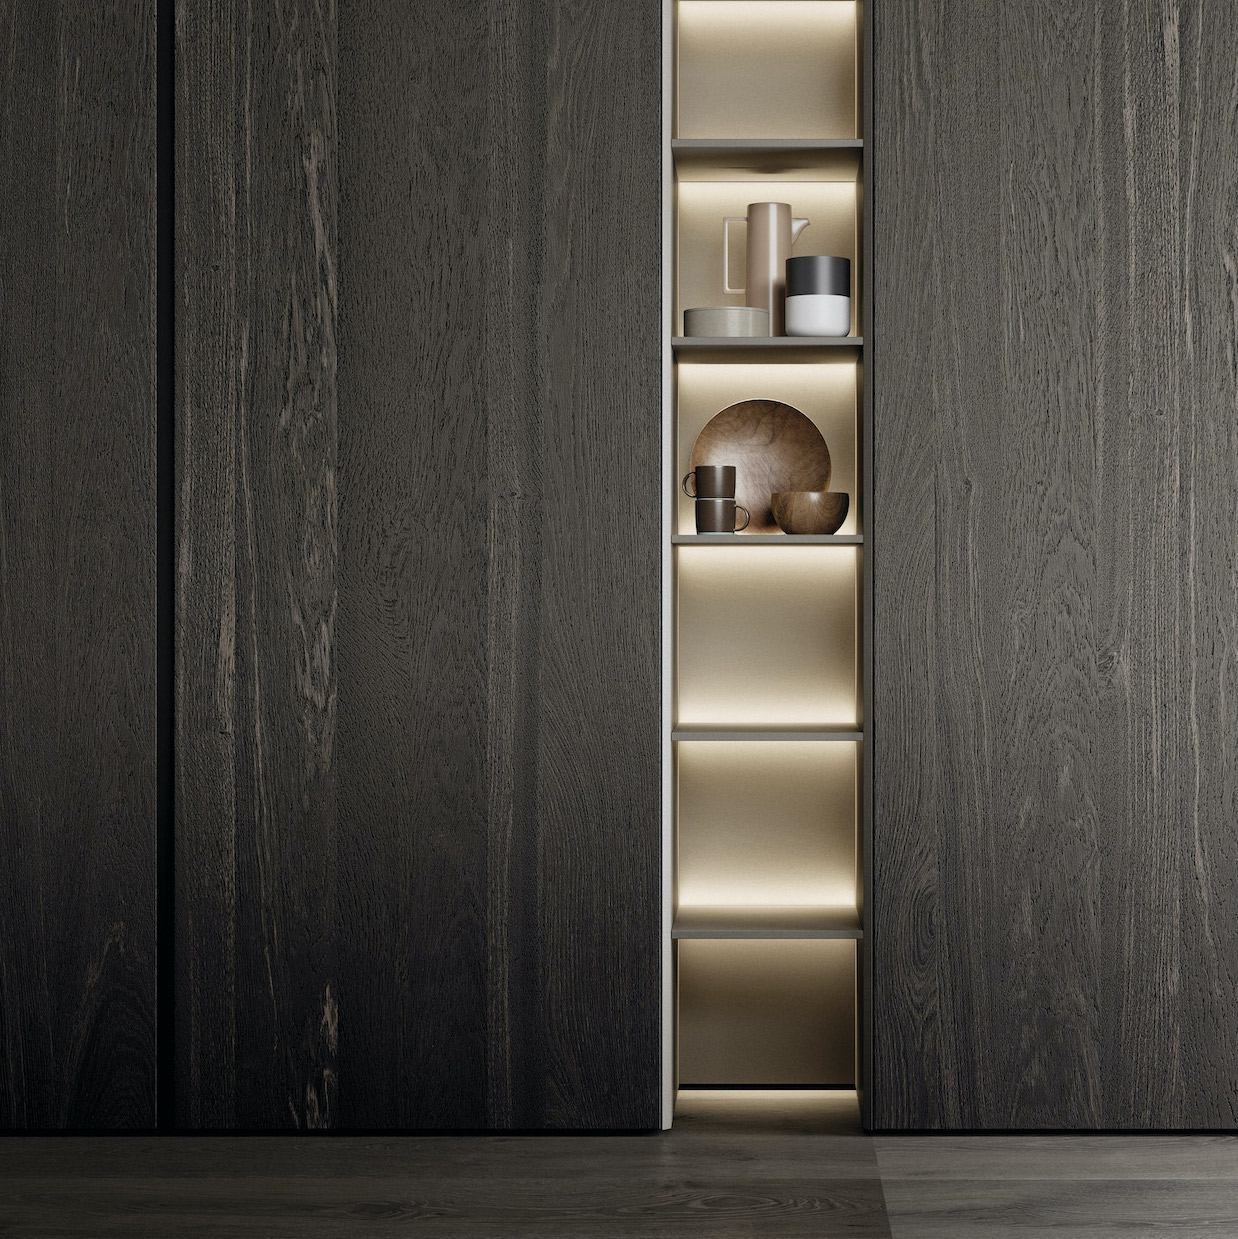 Beautiful dark wood in a modern kitchen.Stunning Italian bespoke kitchen design by Galerie Design